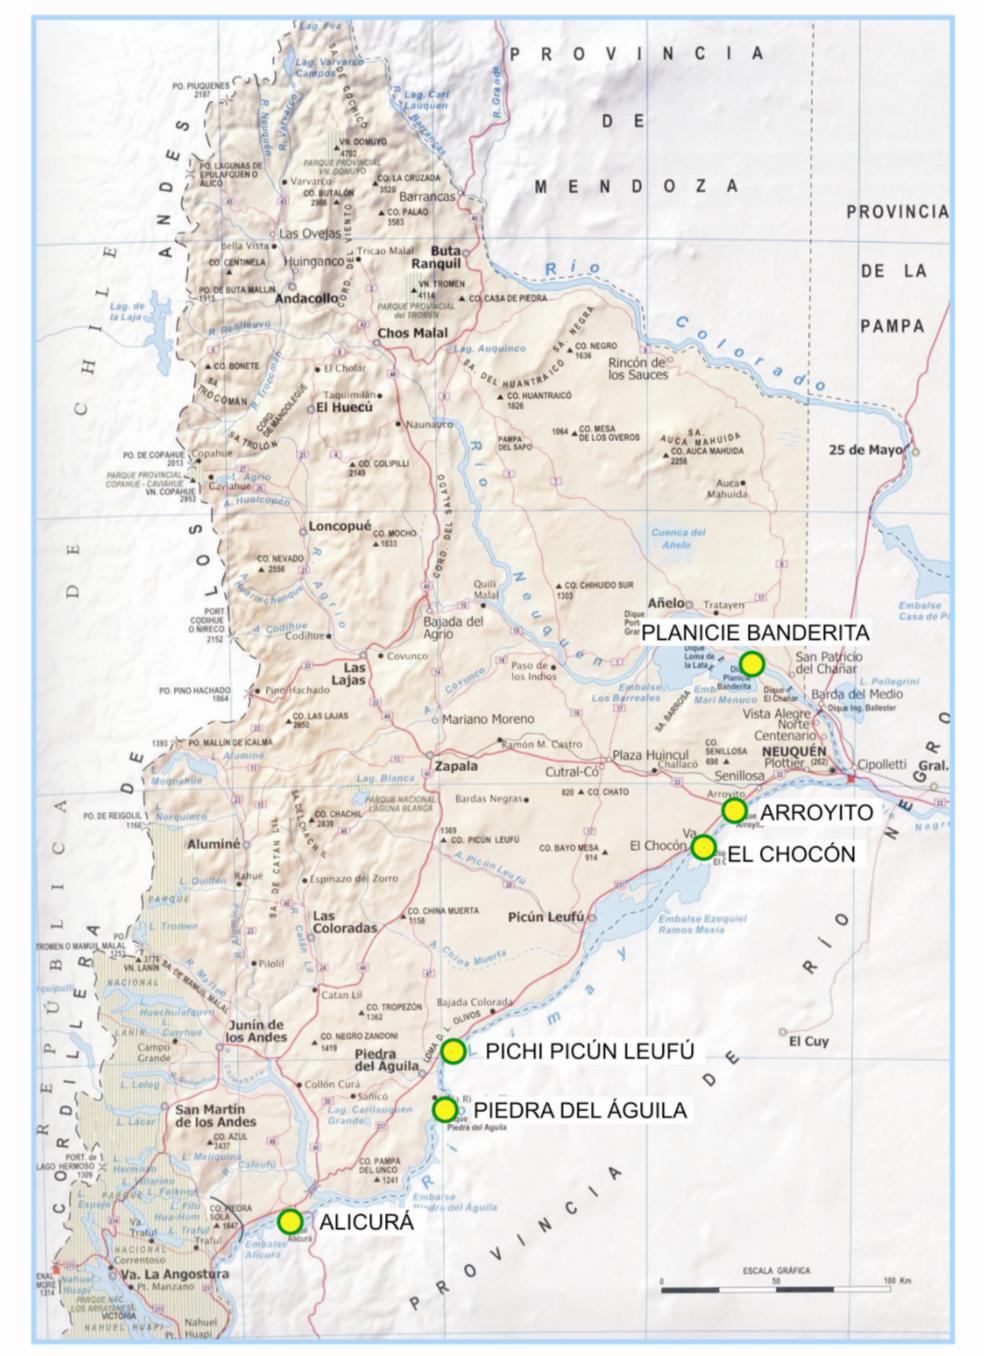 Potencial hidroeléctrico de la provincia del Neuquén Obras existentes